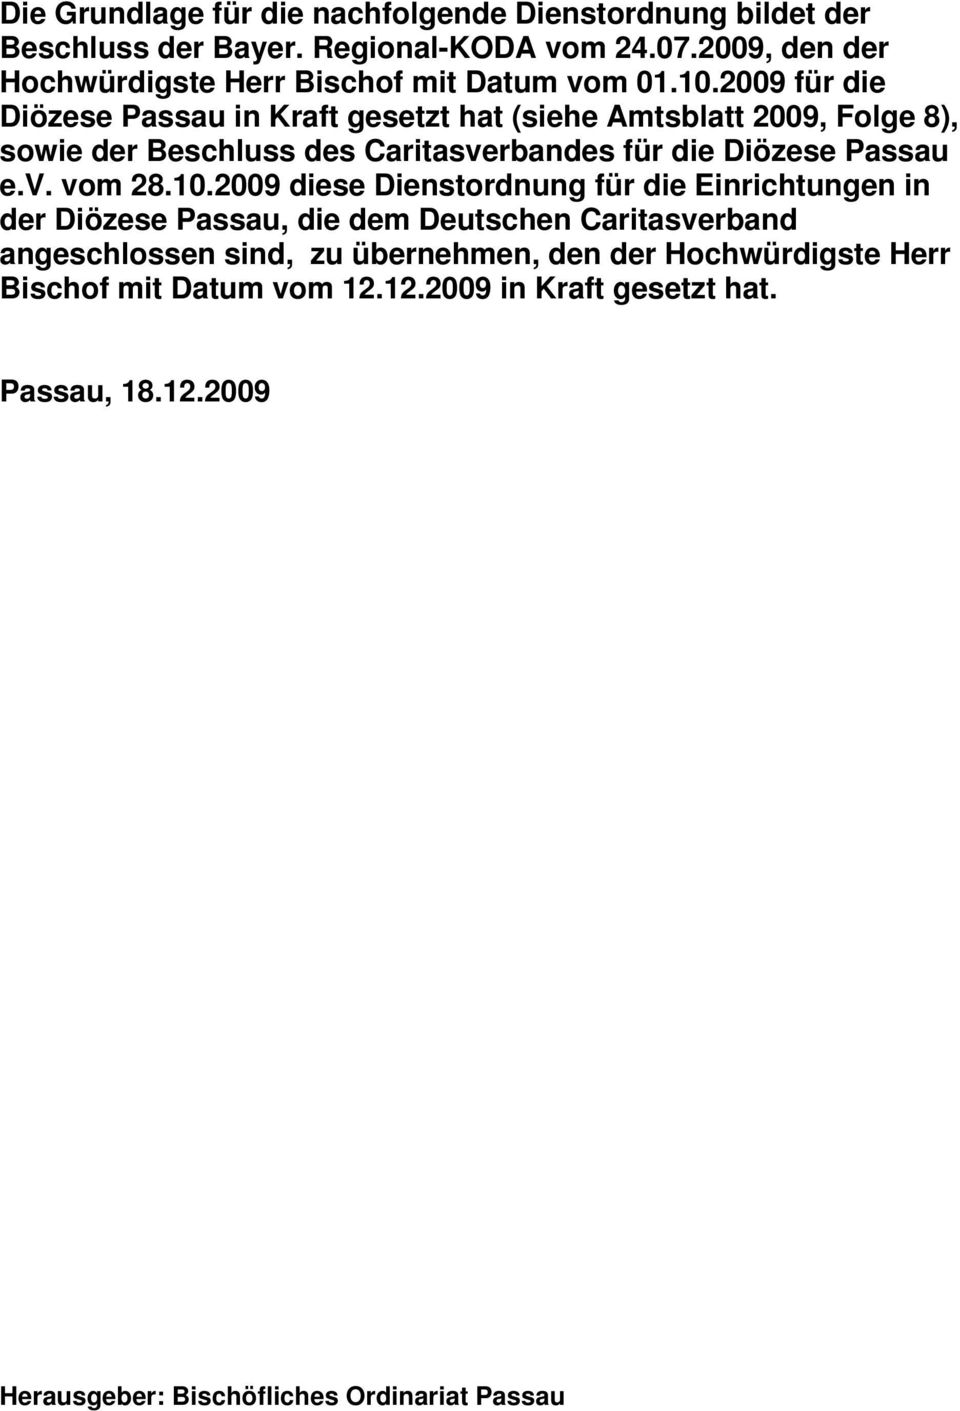 2009 für die Diözese Passau in Kraft gesetzt hat (siehe Amtsblatt 2009, Folge 8), sowie der Beschluss des Caritasverbandes für die Diözese Passau e.v. vom 28.